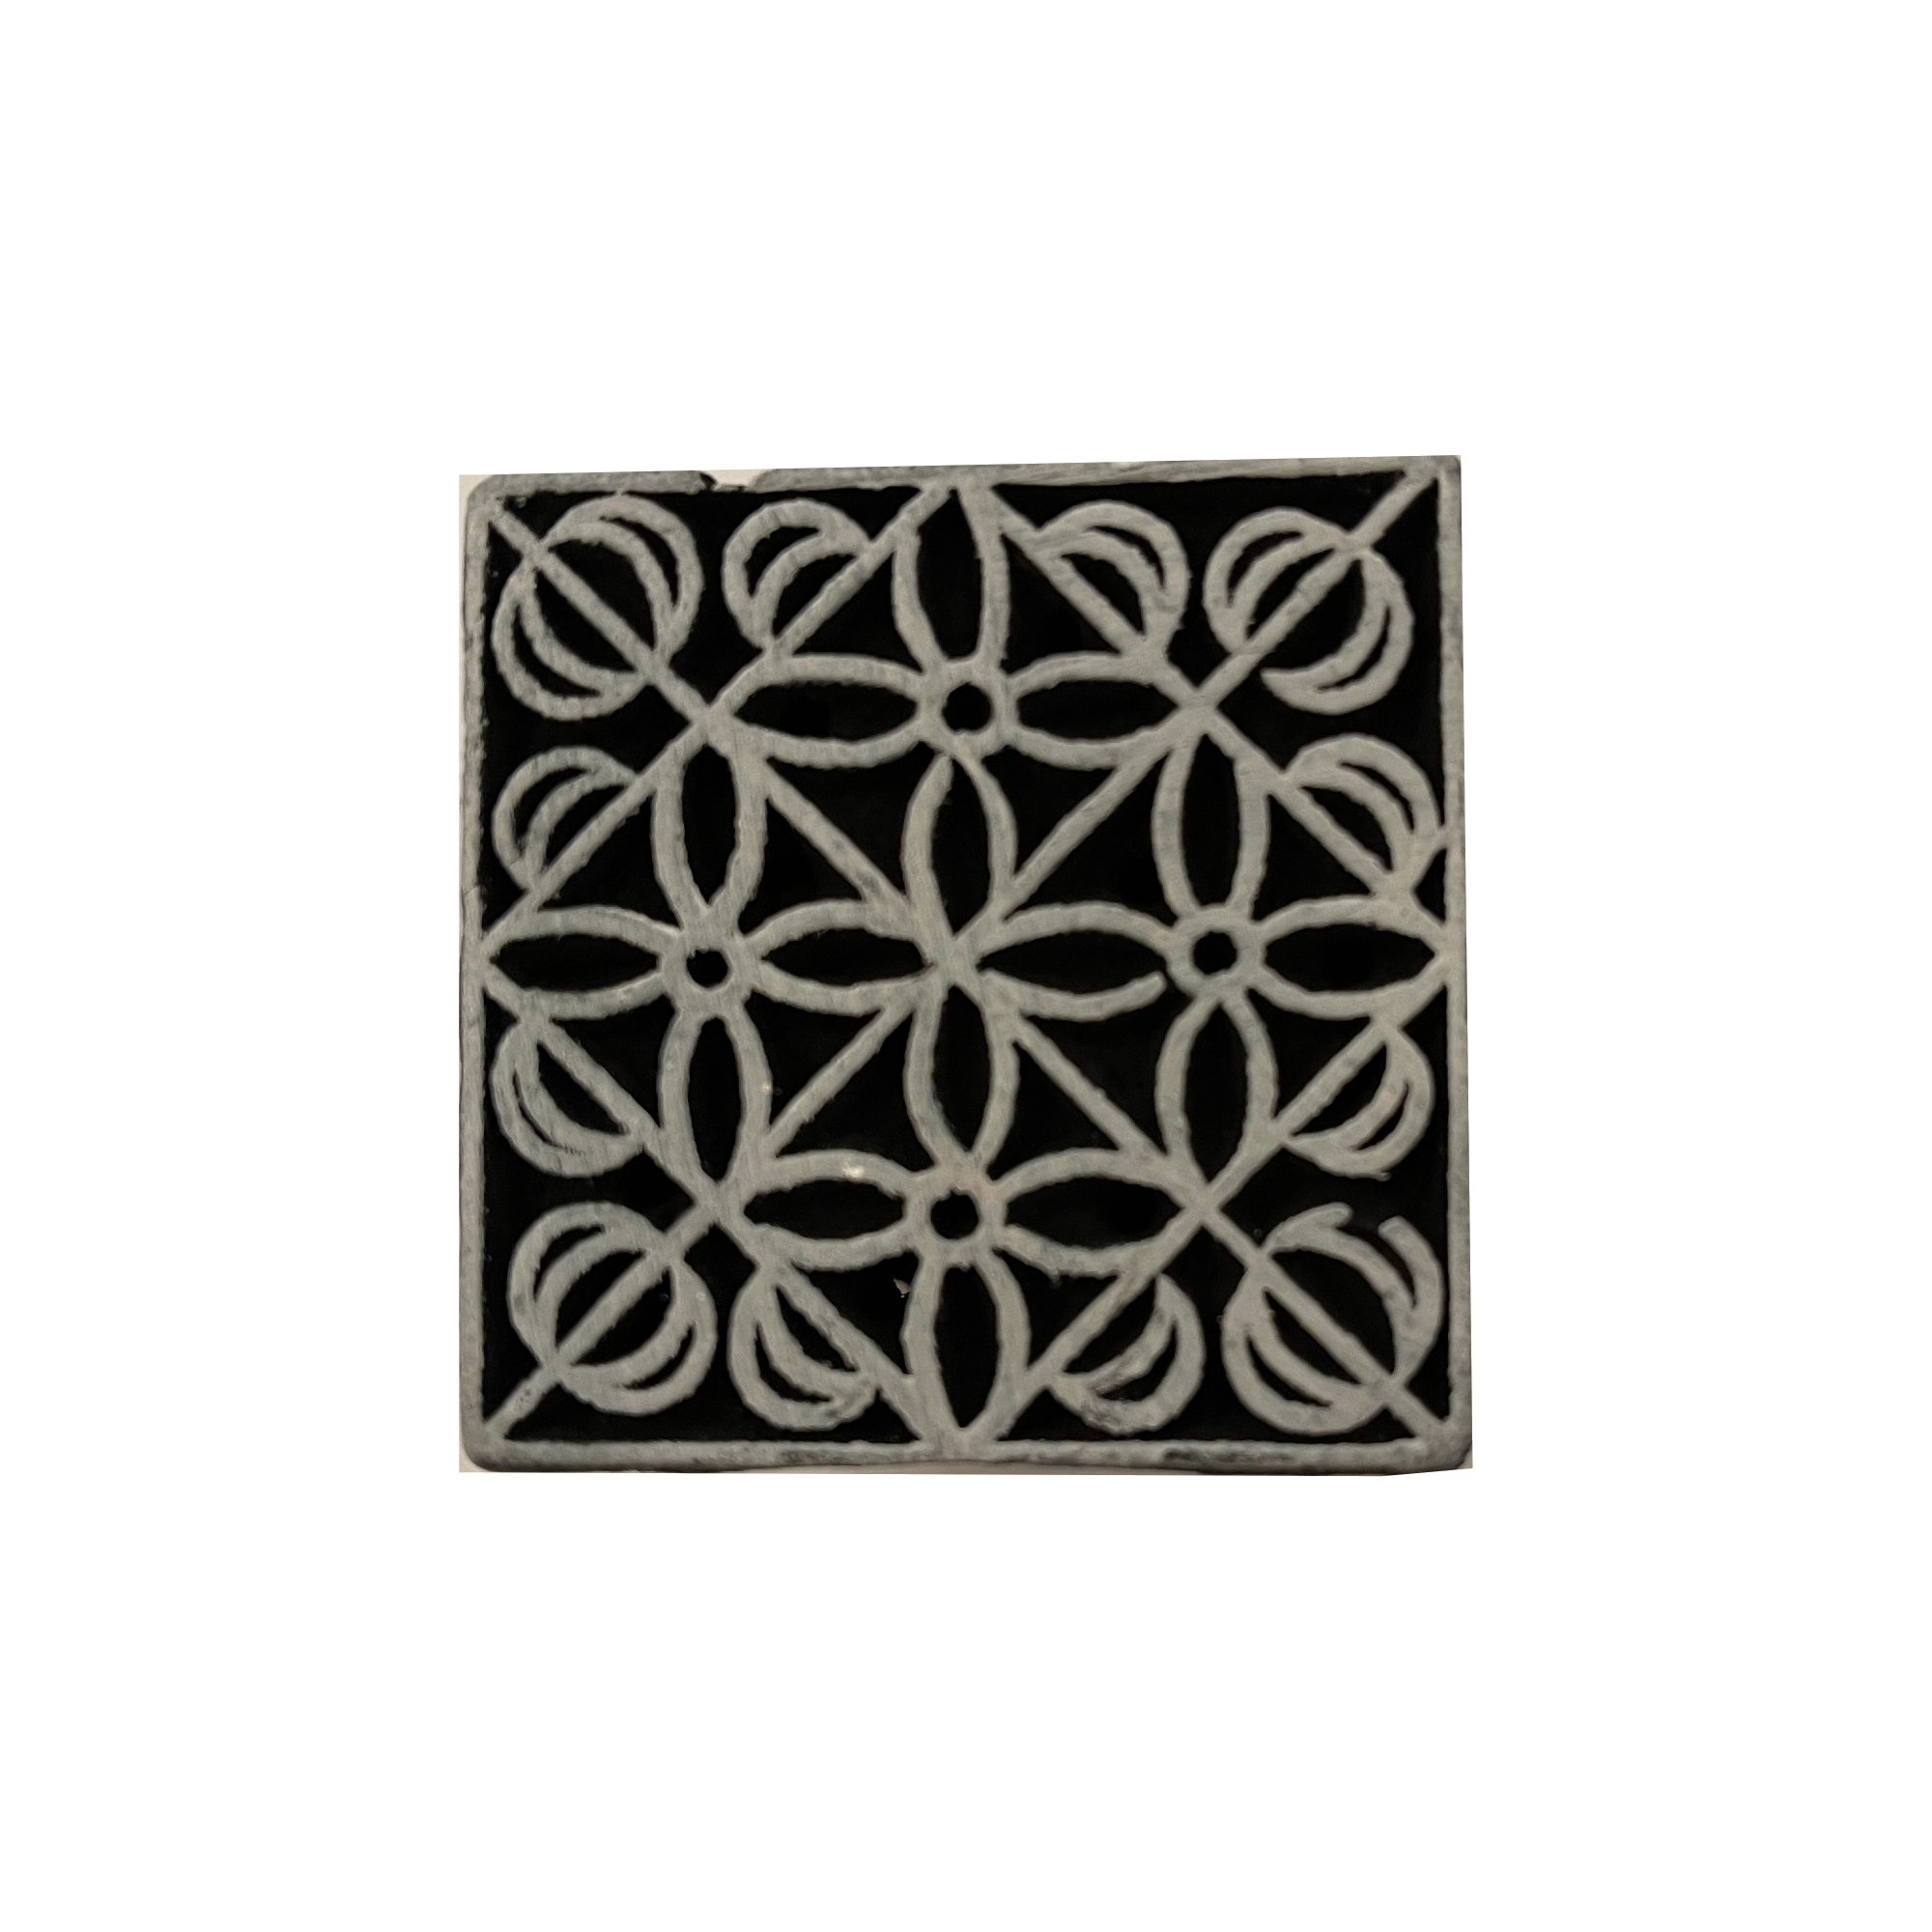 Wood Block Printing Geometrical -19 Styles - Vintage India NYC